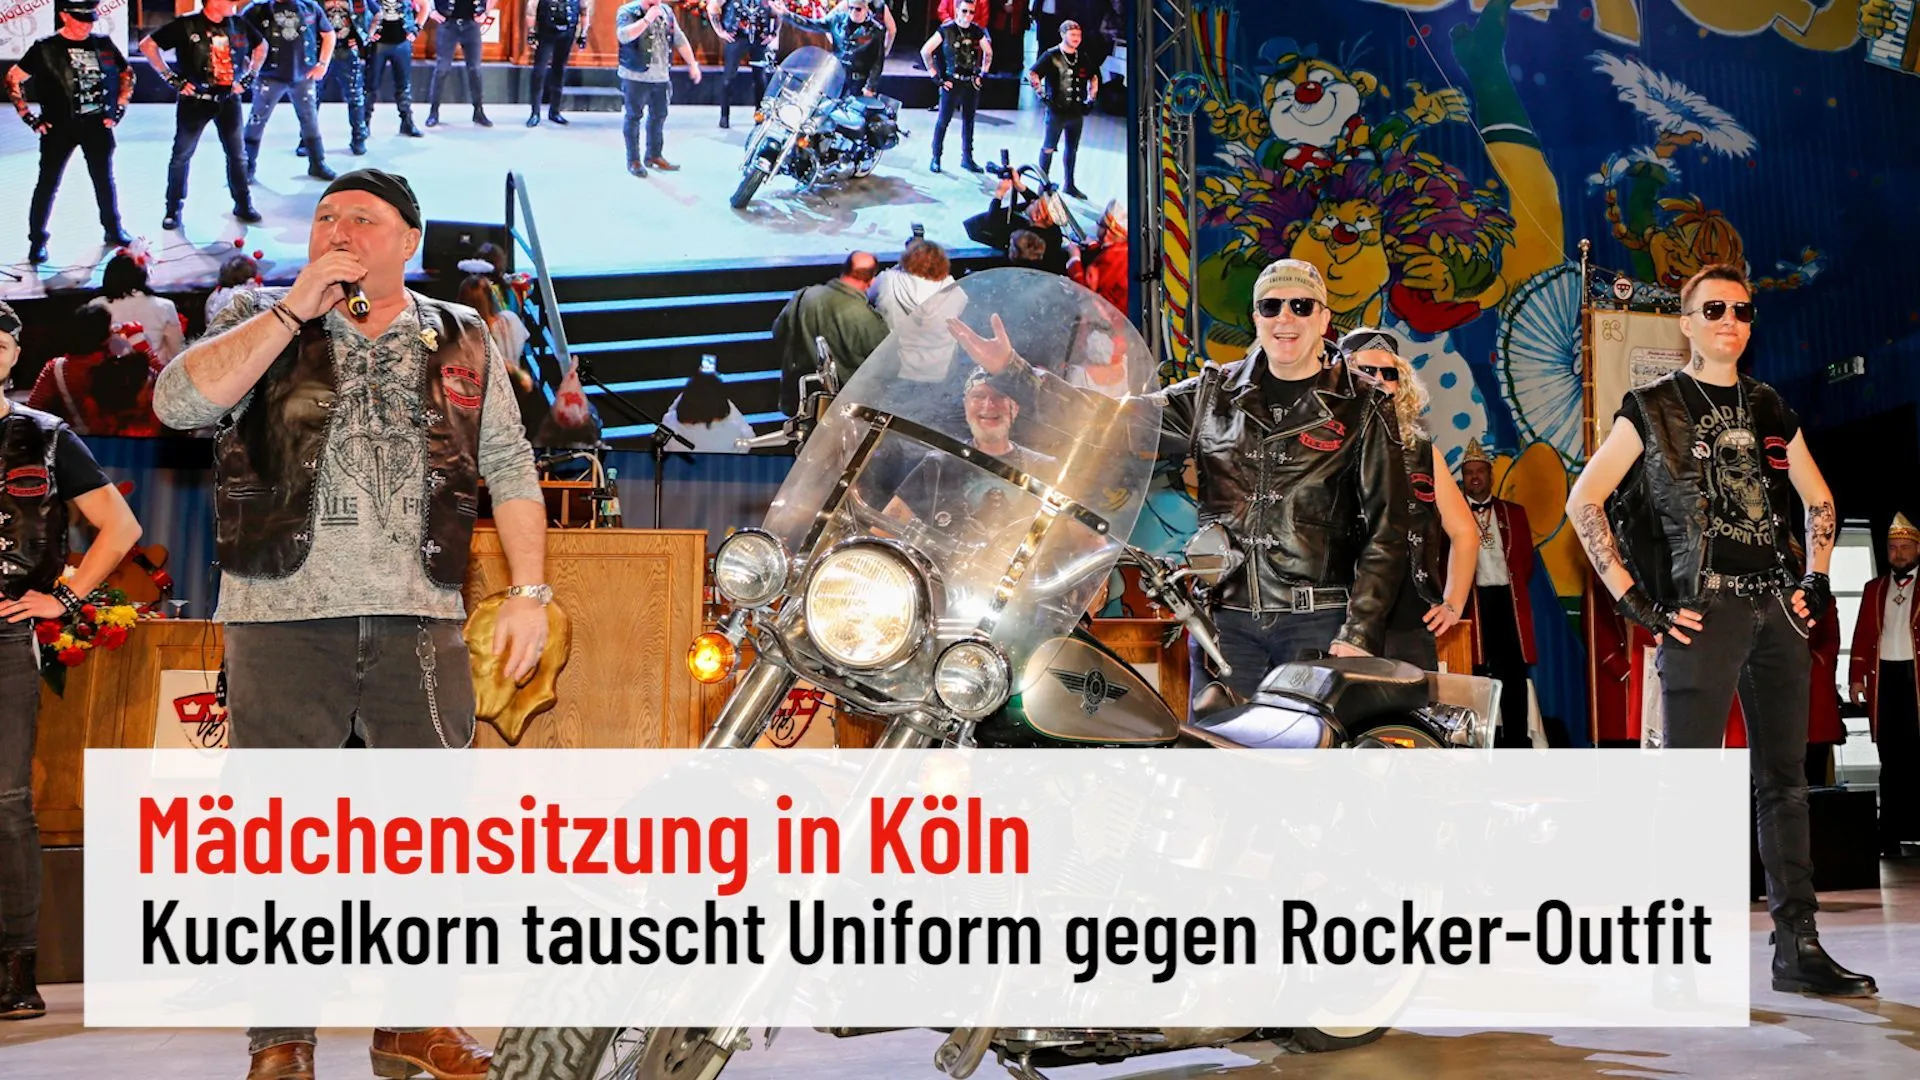 Mädchensitzung in Köln: Christoph Kuckelkorn fährt mit Harley auf die Bühne